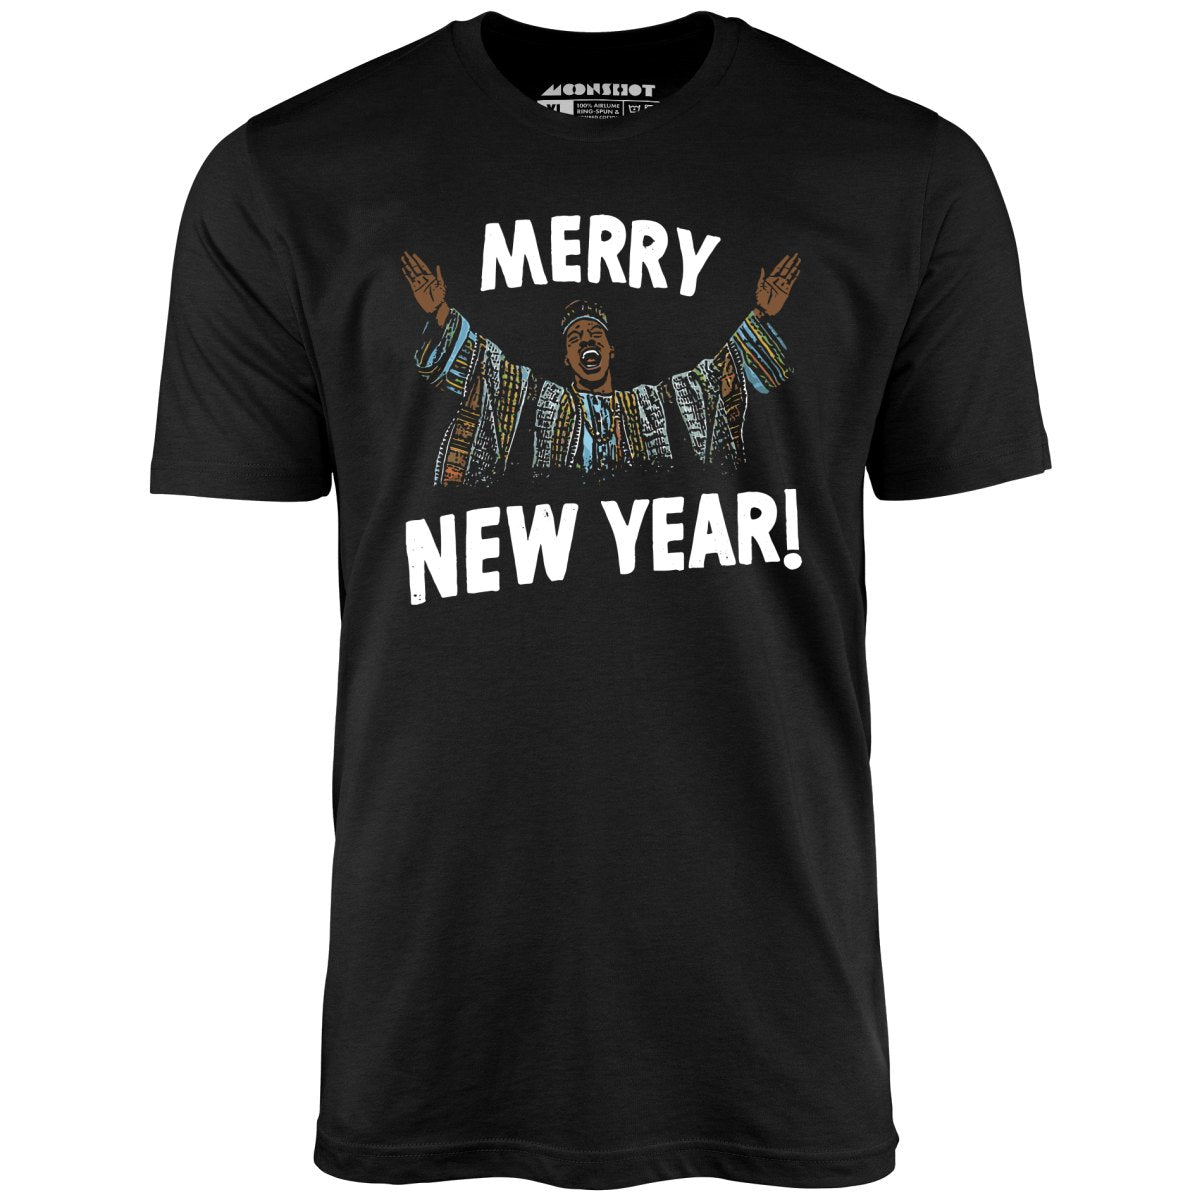 Merry New Year! - Unisex T-Shirt